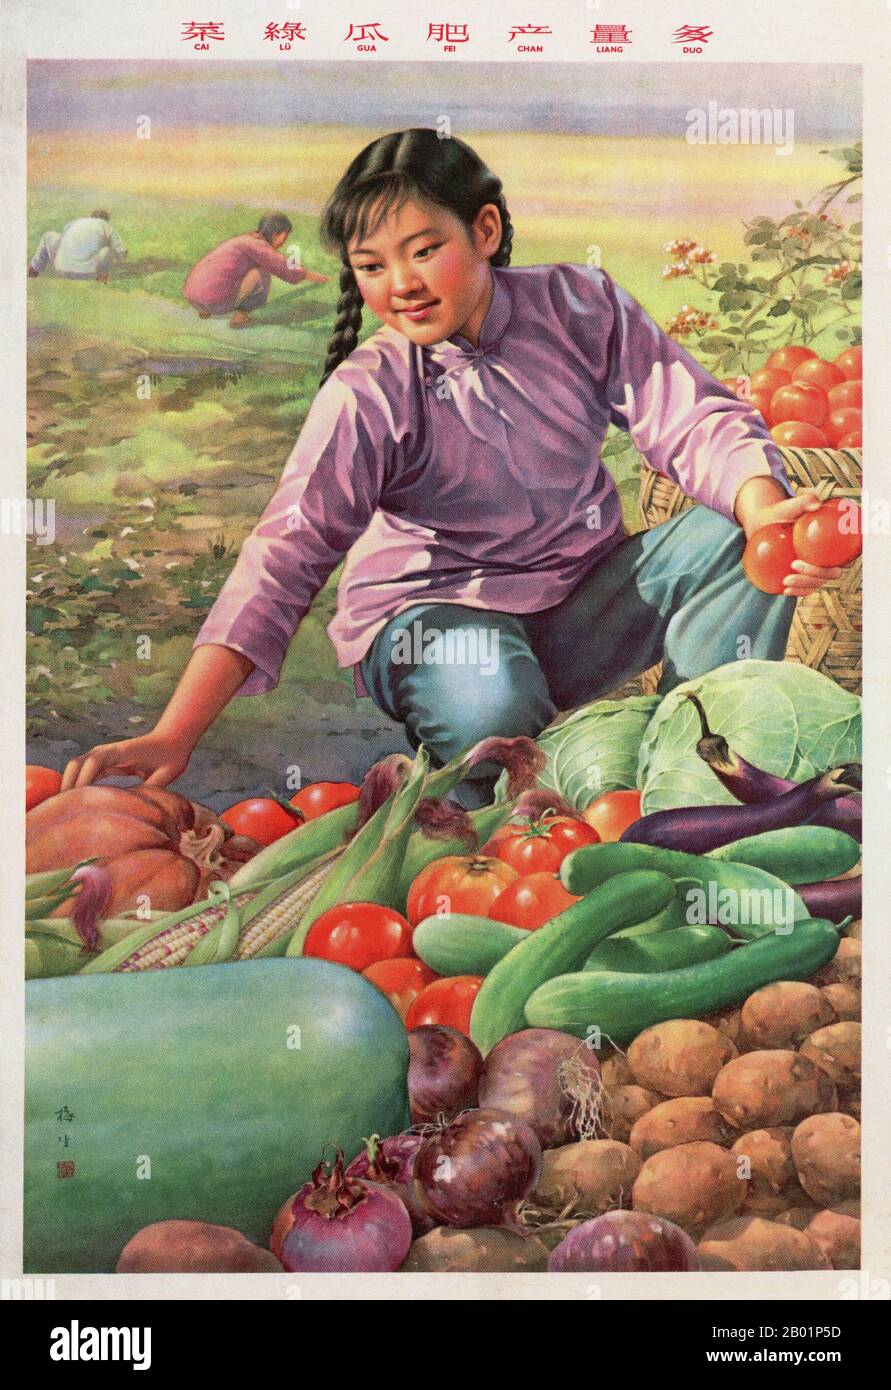 China: "Das Gemüse ist grün, die Gurken prallen, der Ertrag reichlich". Propagandaplakat aus dem Großen Sprung nach vorne (1958–1961) von Jin Meisheng, 1959. Der große Sprung nach vorne in der Volksrepublik China (VR China) war eine wirtschaftliche und soziale Kampagne der Kommunistischen Partei Chinas (KPC), die sich in Planungsentscheidungen von 1958 bis 1961 widerspiegelte. die darauf abzielte, Chinas riesige Bevölkerung zu nutzen, um das Land durch den Prozess der raschen Industrialisierung und Kollektivierung rasch von einer Agrarwirtschaft in eine moderne kommunistische Gesellschaft zu verwandeln. Stockfoto